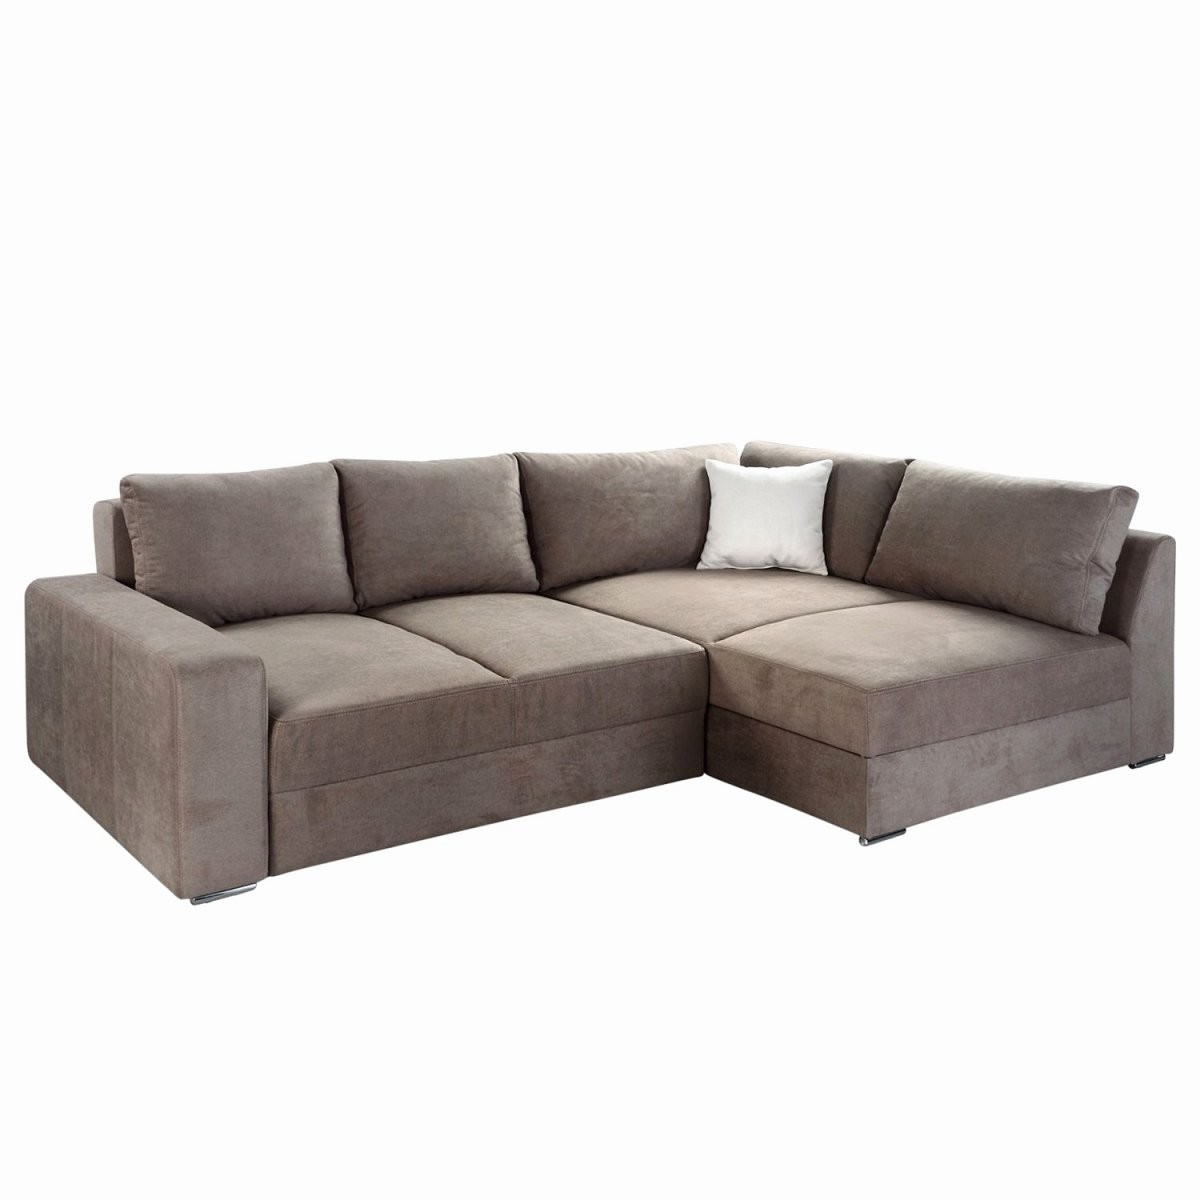 Sofa Zum Ausziehen Best Of Galerie Couch Zum Ausziehen Einzigartig von Couch Zweisitzer Zum Ausziehen Bild